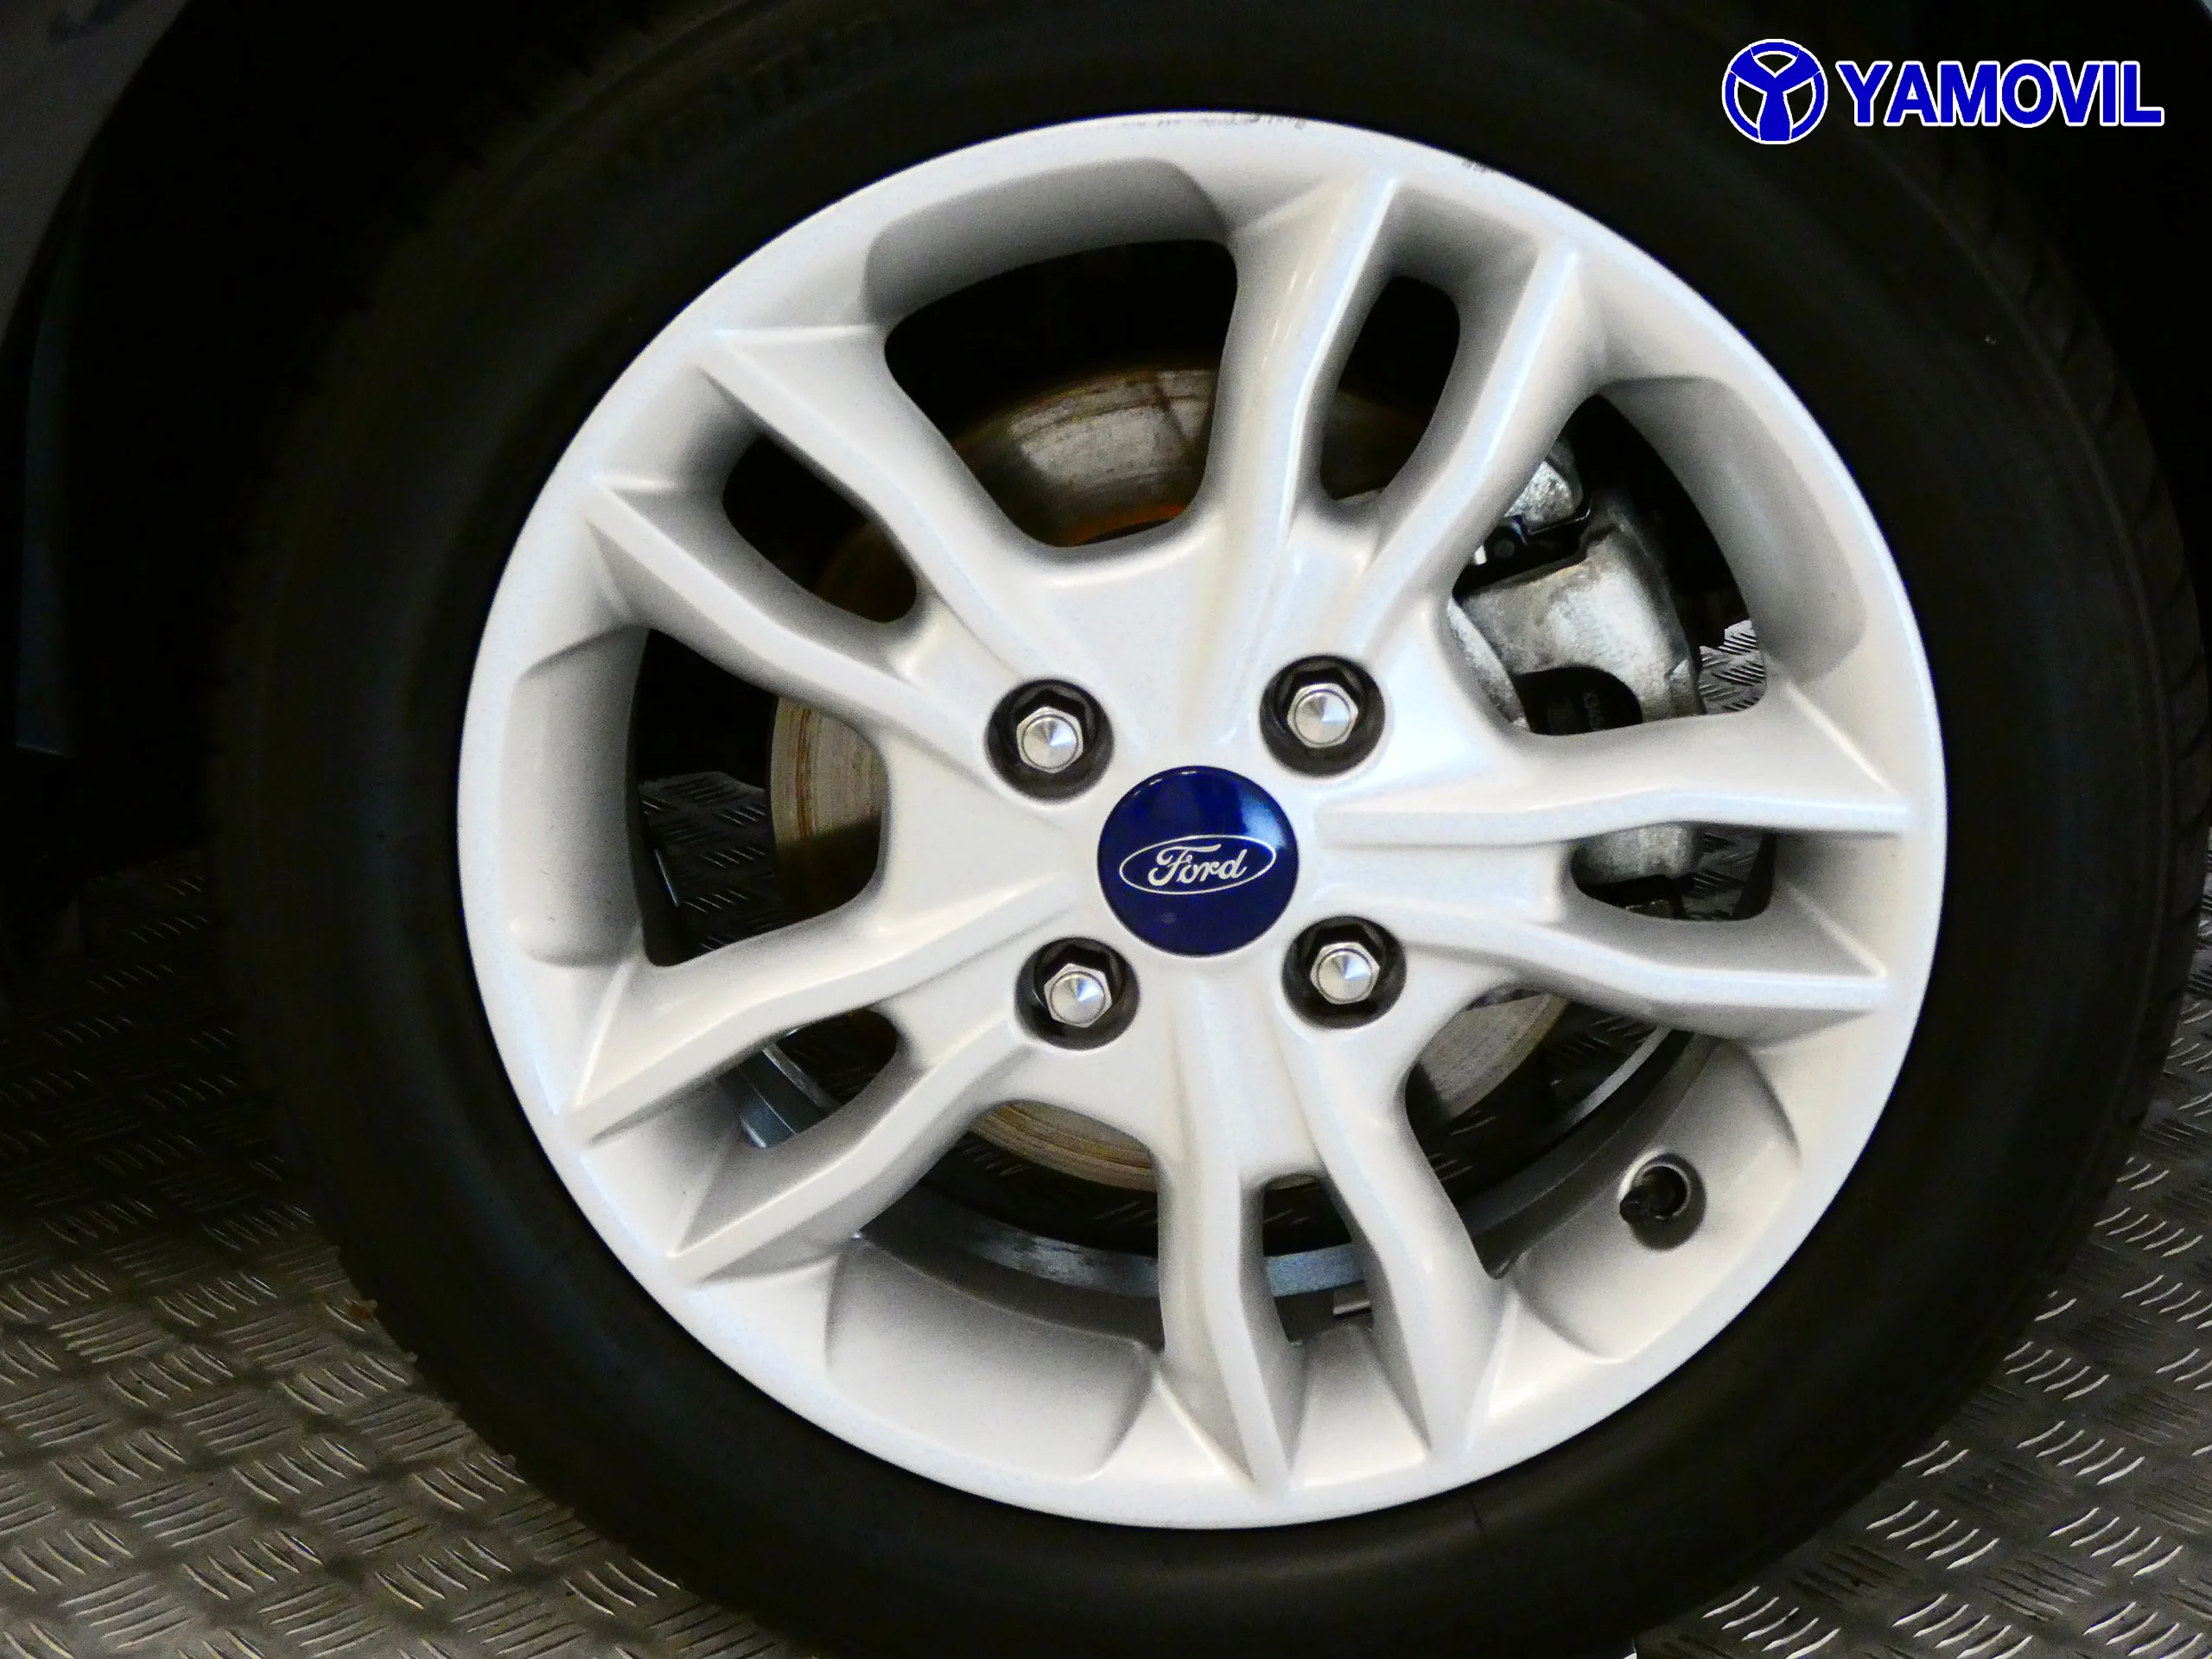 Ford Fiesta 1.25 DURATEC TREND 5P - Foto 9